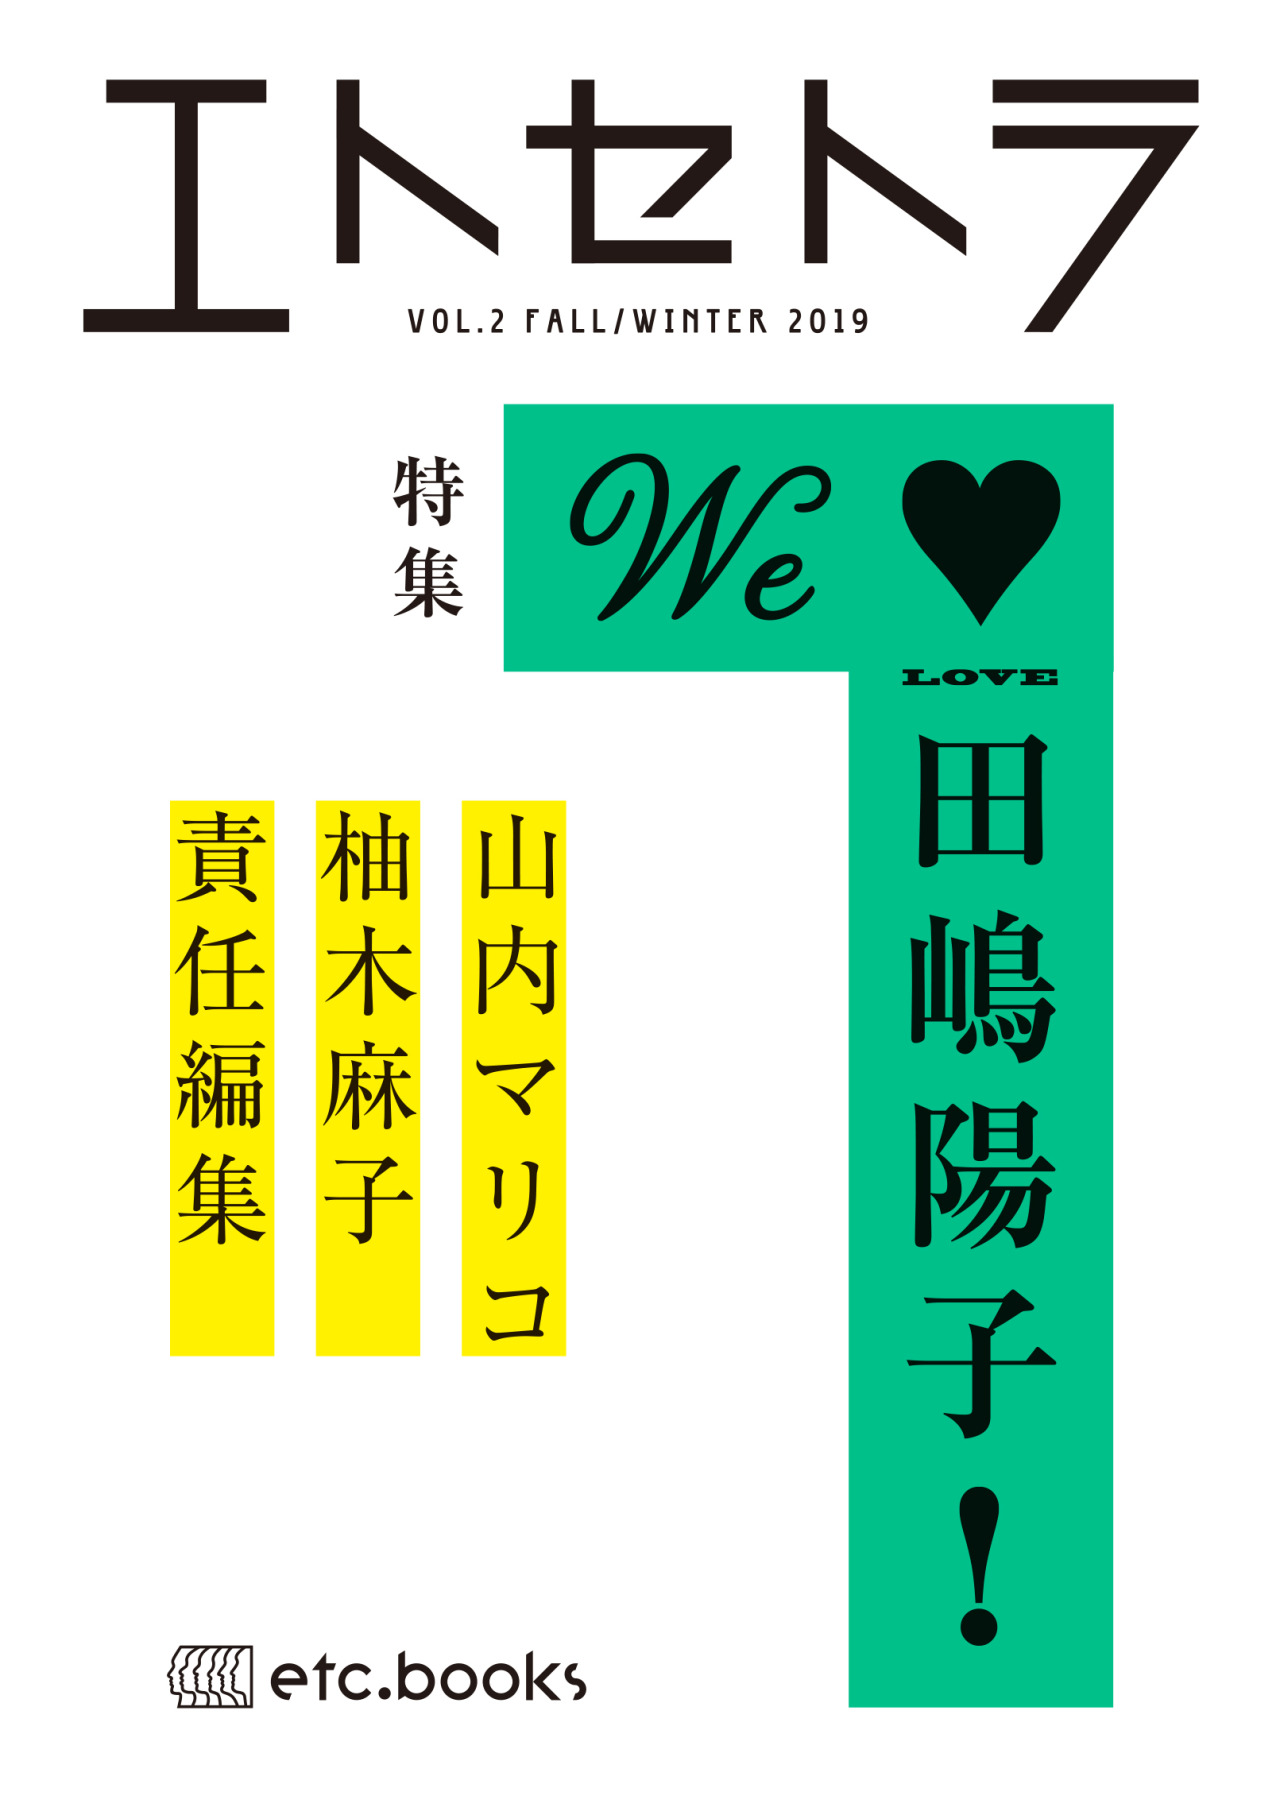 雑誌 magazine『エトセトラ vol.2』（etc.books） cover design